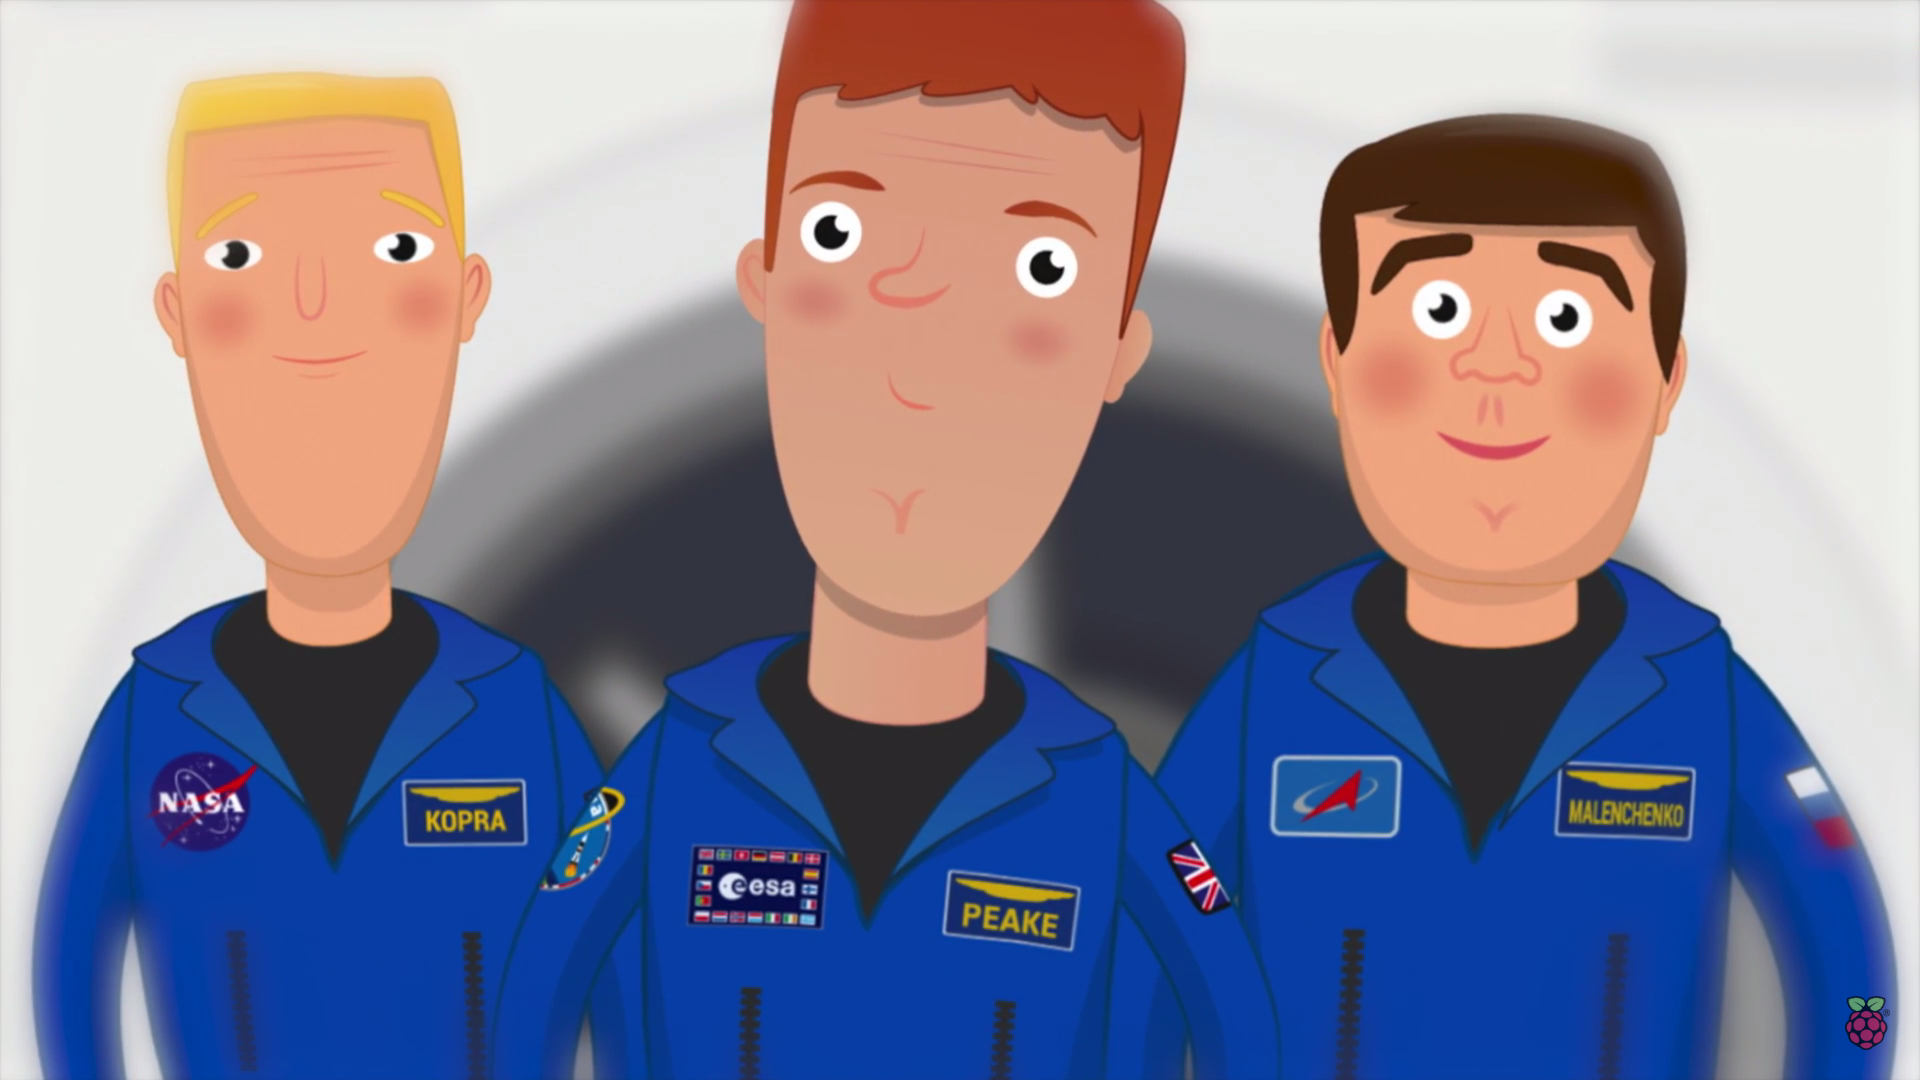 Expedition 46 crew members Tim Kopra, Tim Peake and Yuri Malenchenko